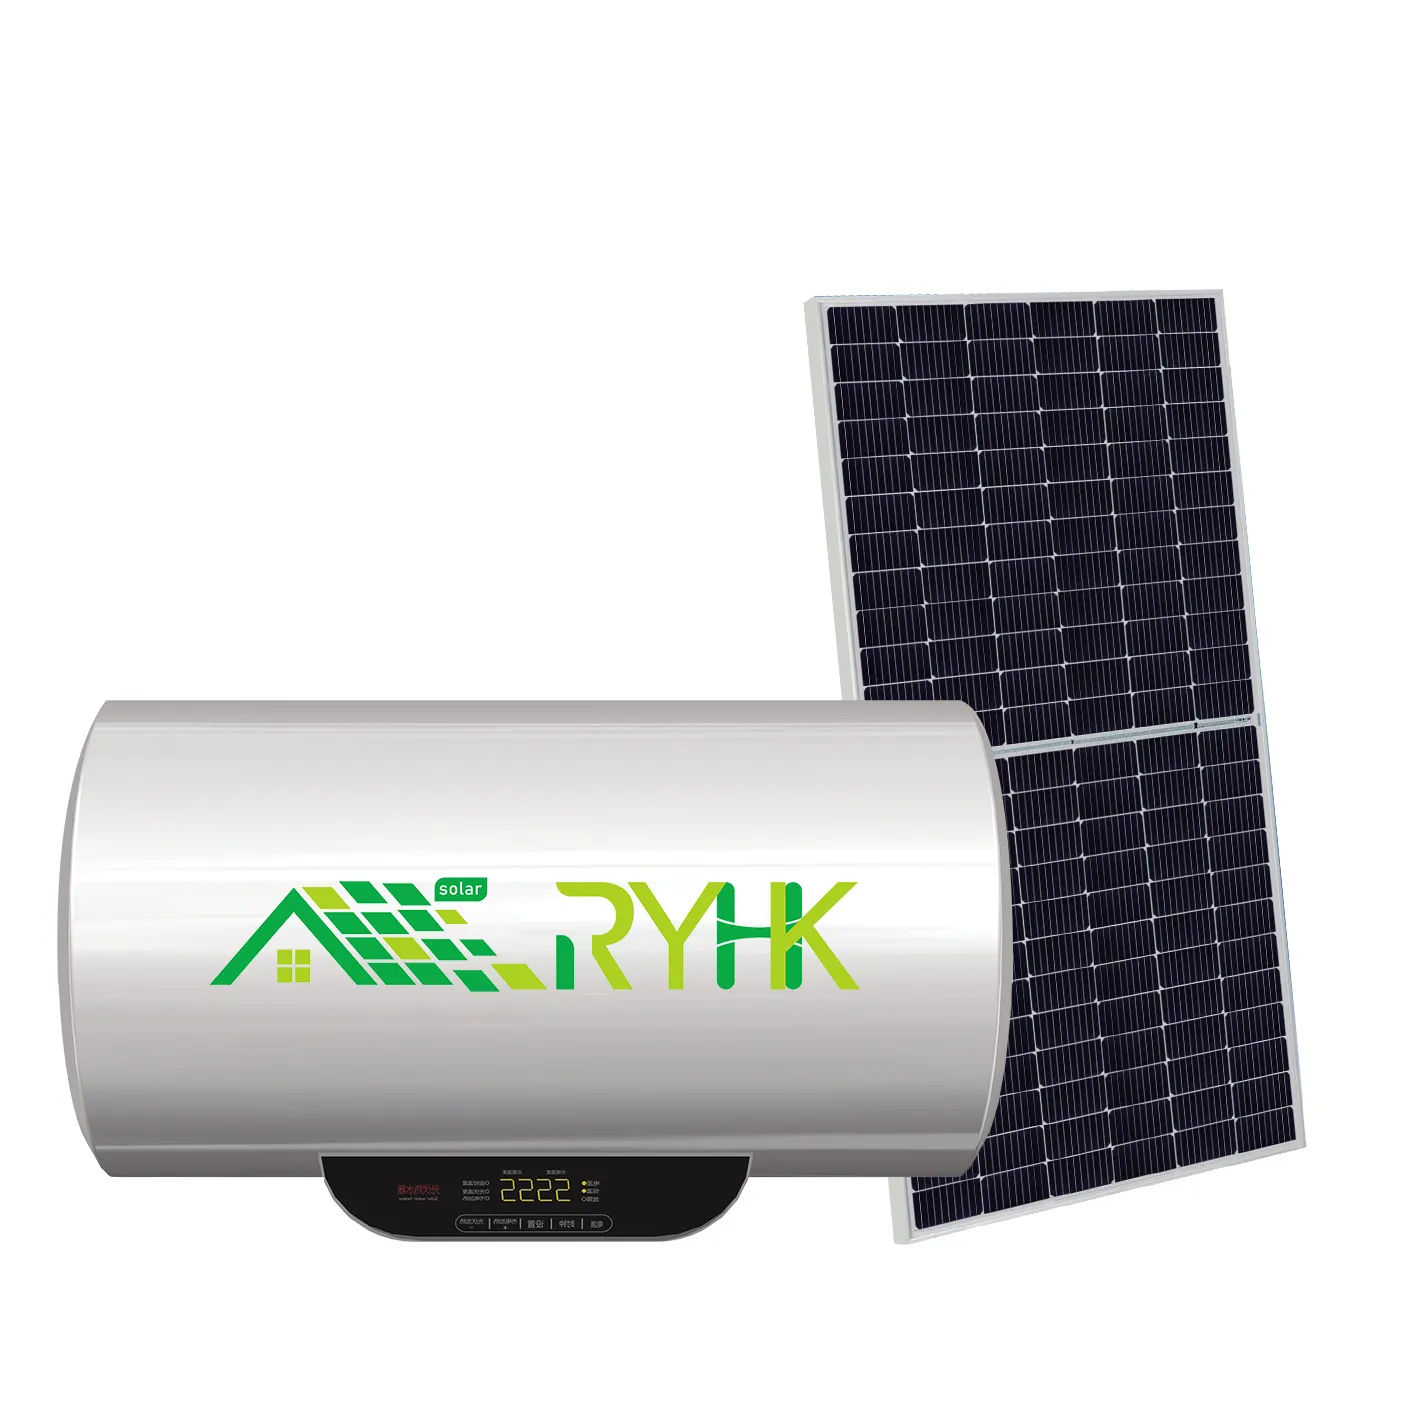 Neues Design 200 L kompakter Druckloser Solar-Wassererhitzer mit Edelstahl-Tank